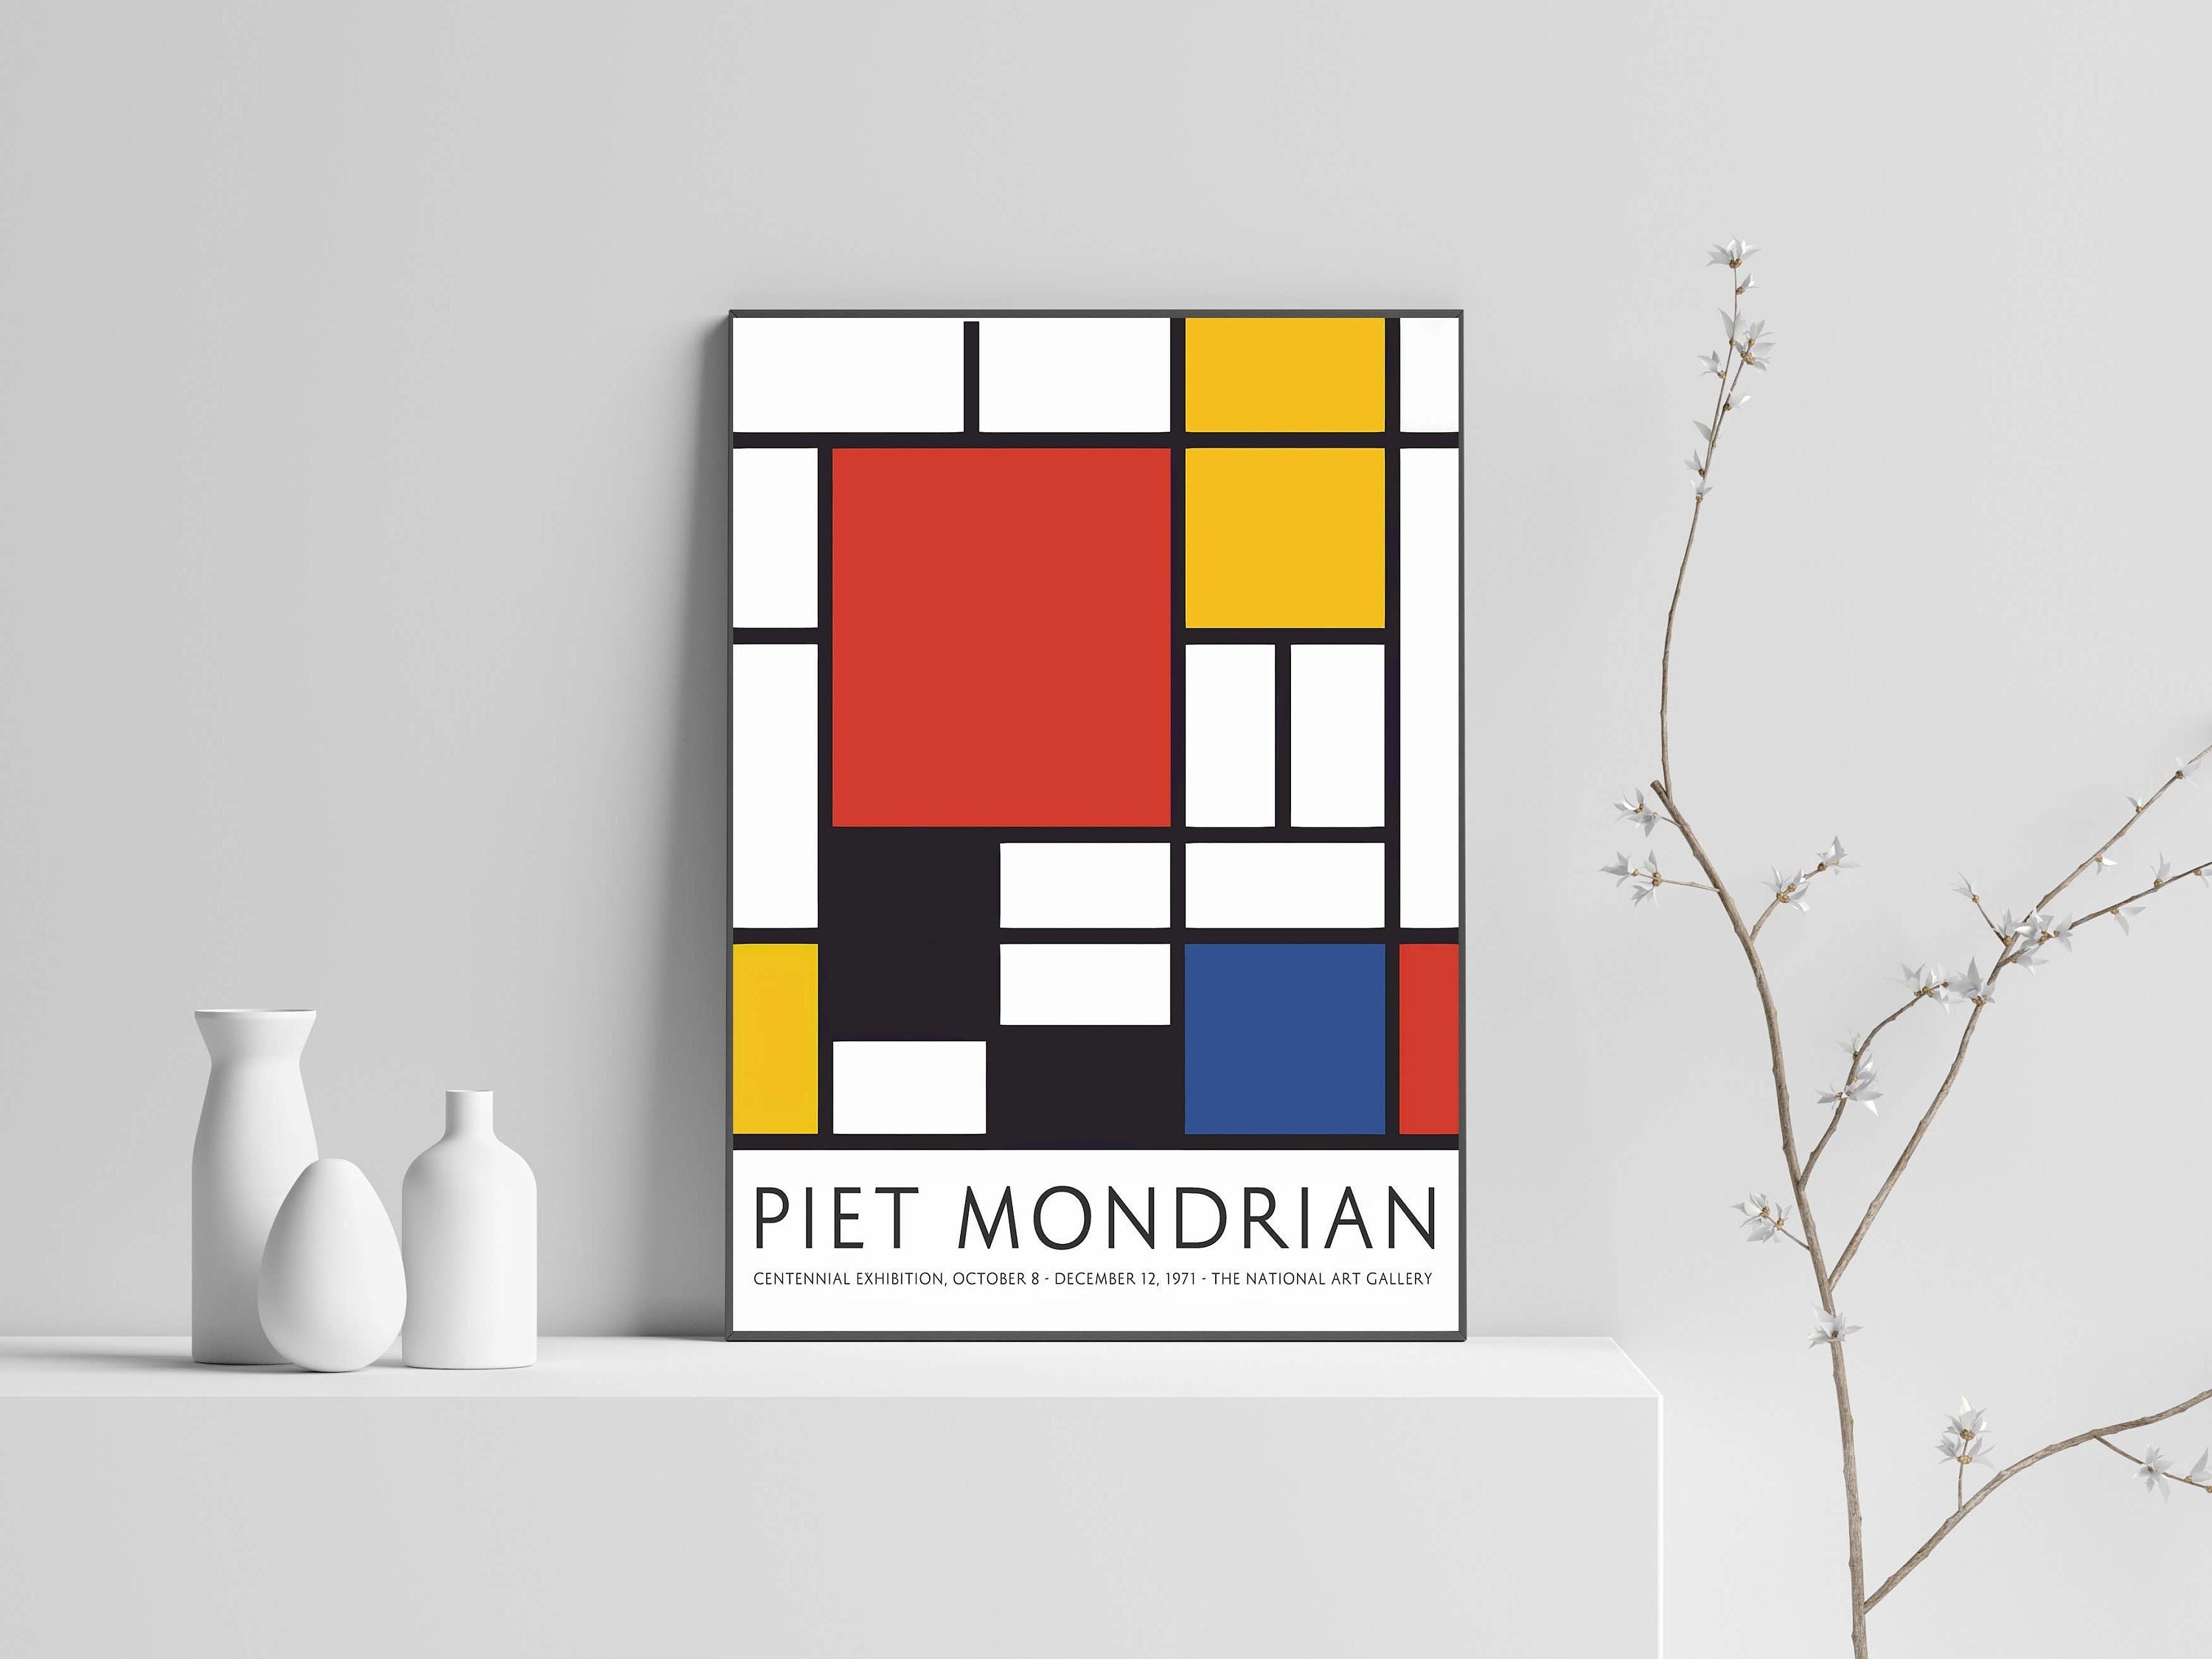 Original Piet Mondrian Painting